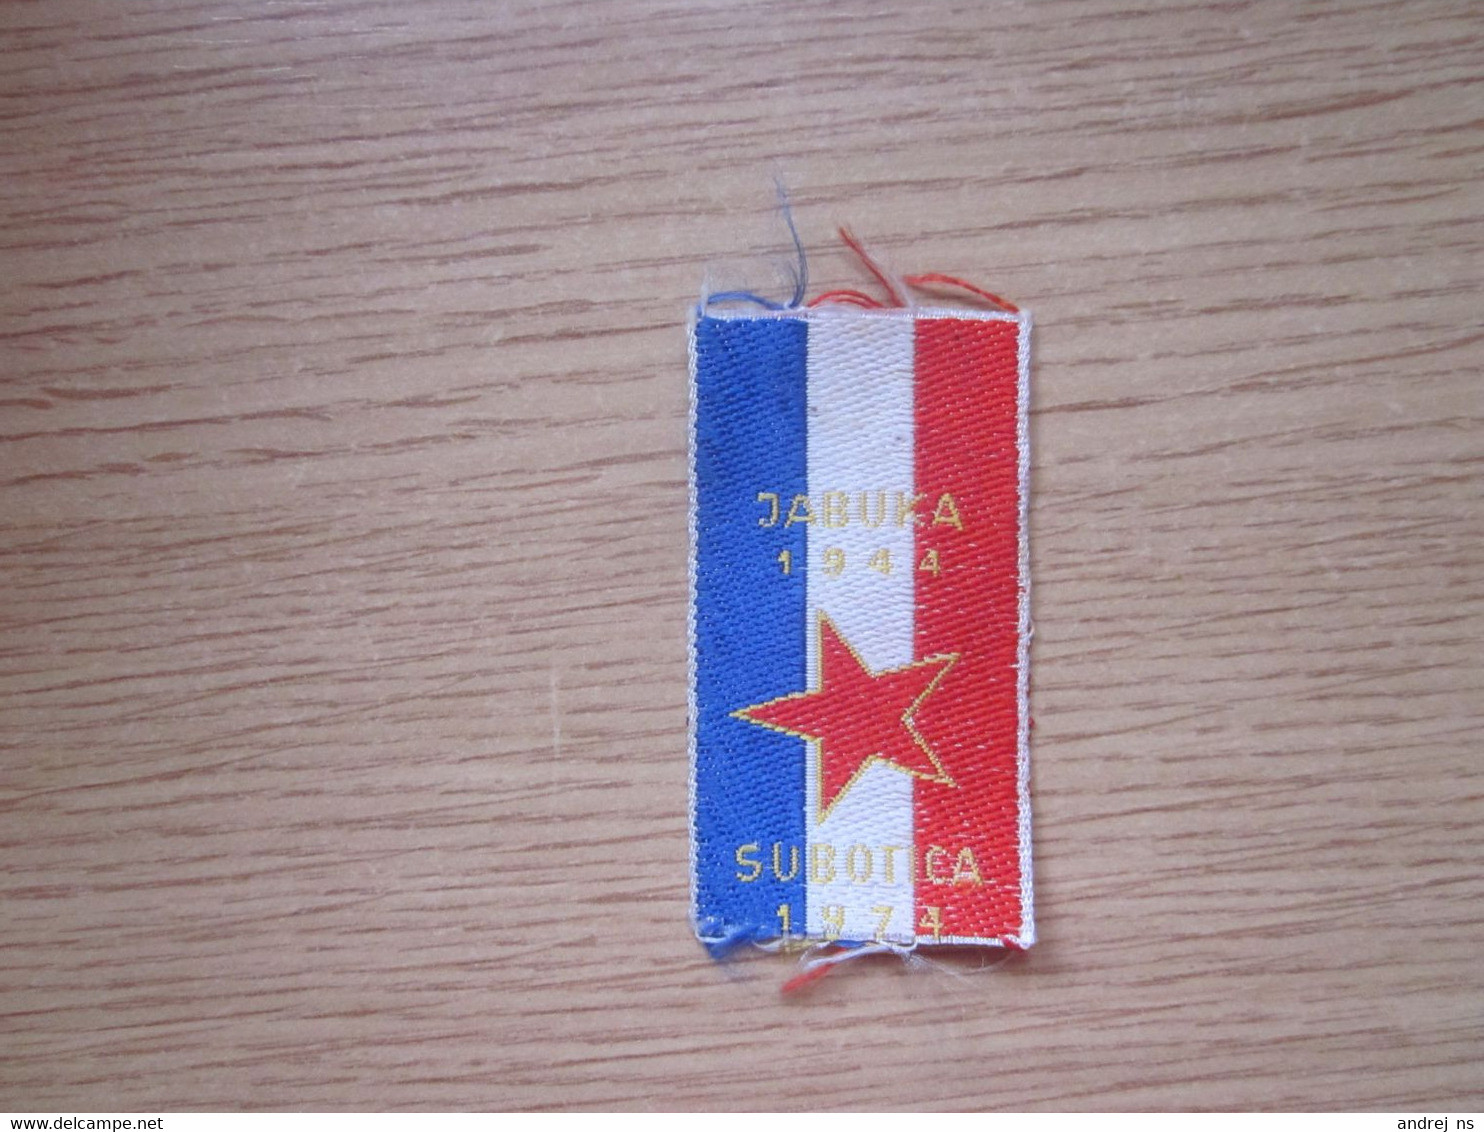 Small Flag Of Yugoslavia Jabuka 1944 Subotica 1974 3.2x5.5 Cm - Vlaggen